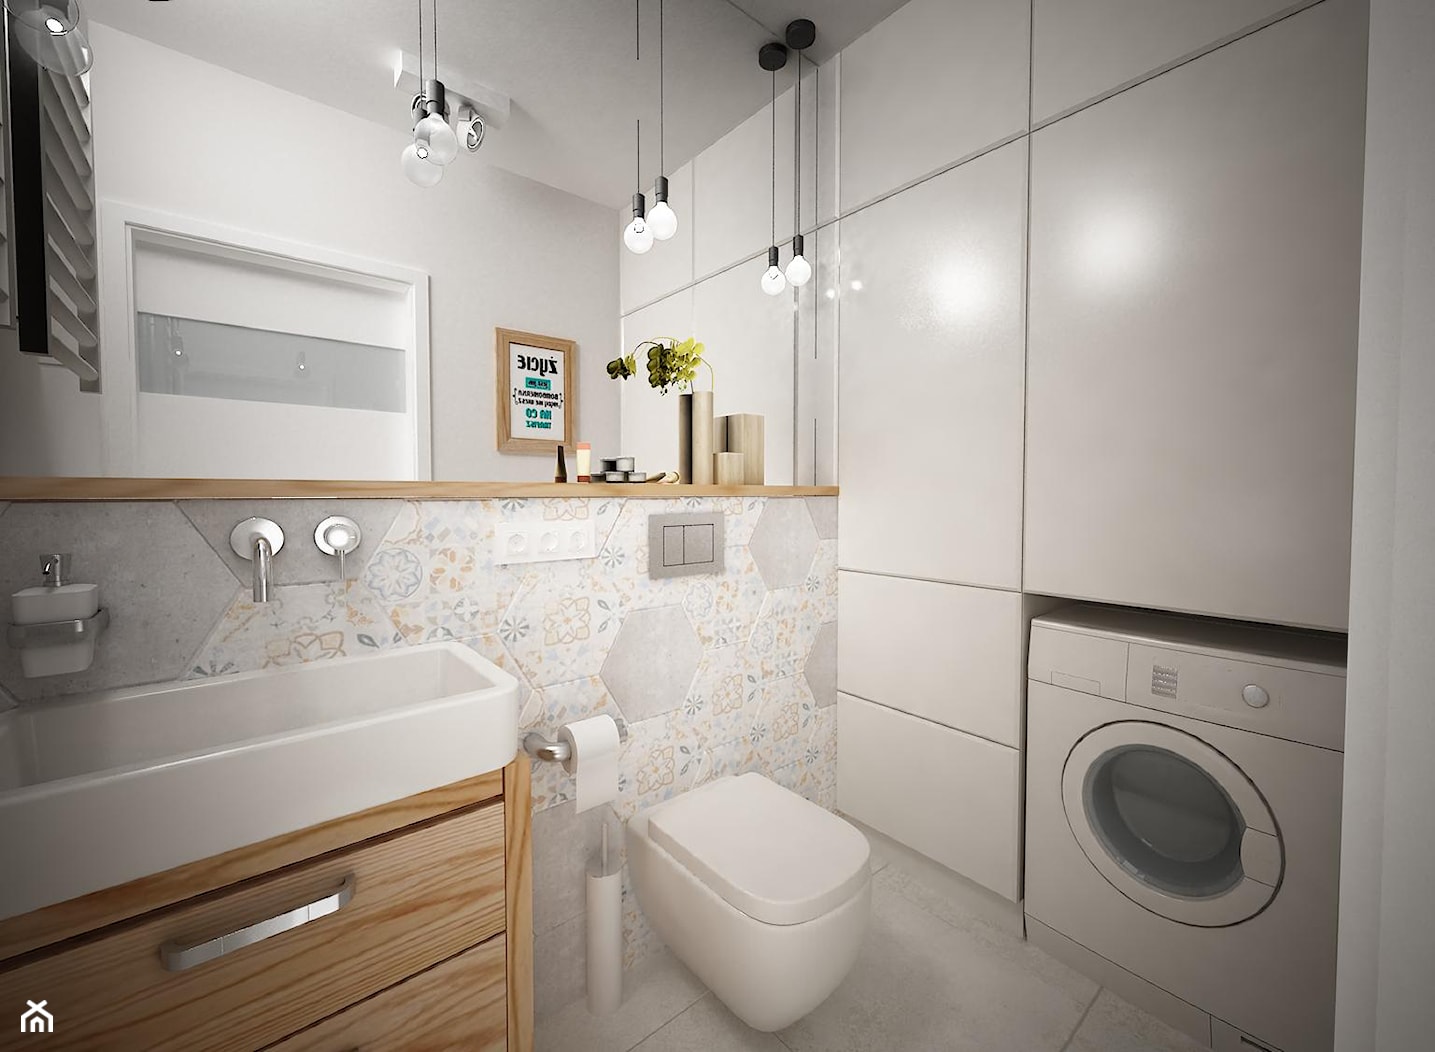 Łazienka w stylu skandynawskim z oprawą w stylu boho - zdjęcie od Inside Projekty Wnętrz. Małgorzata Więch - Homebook